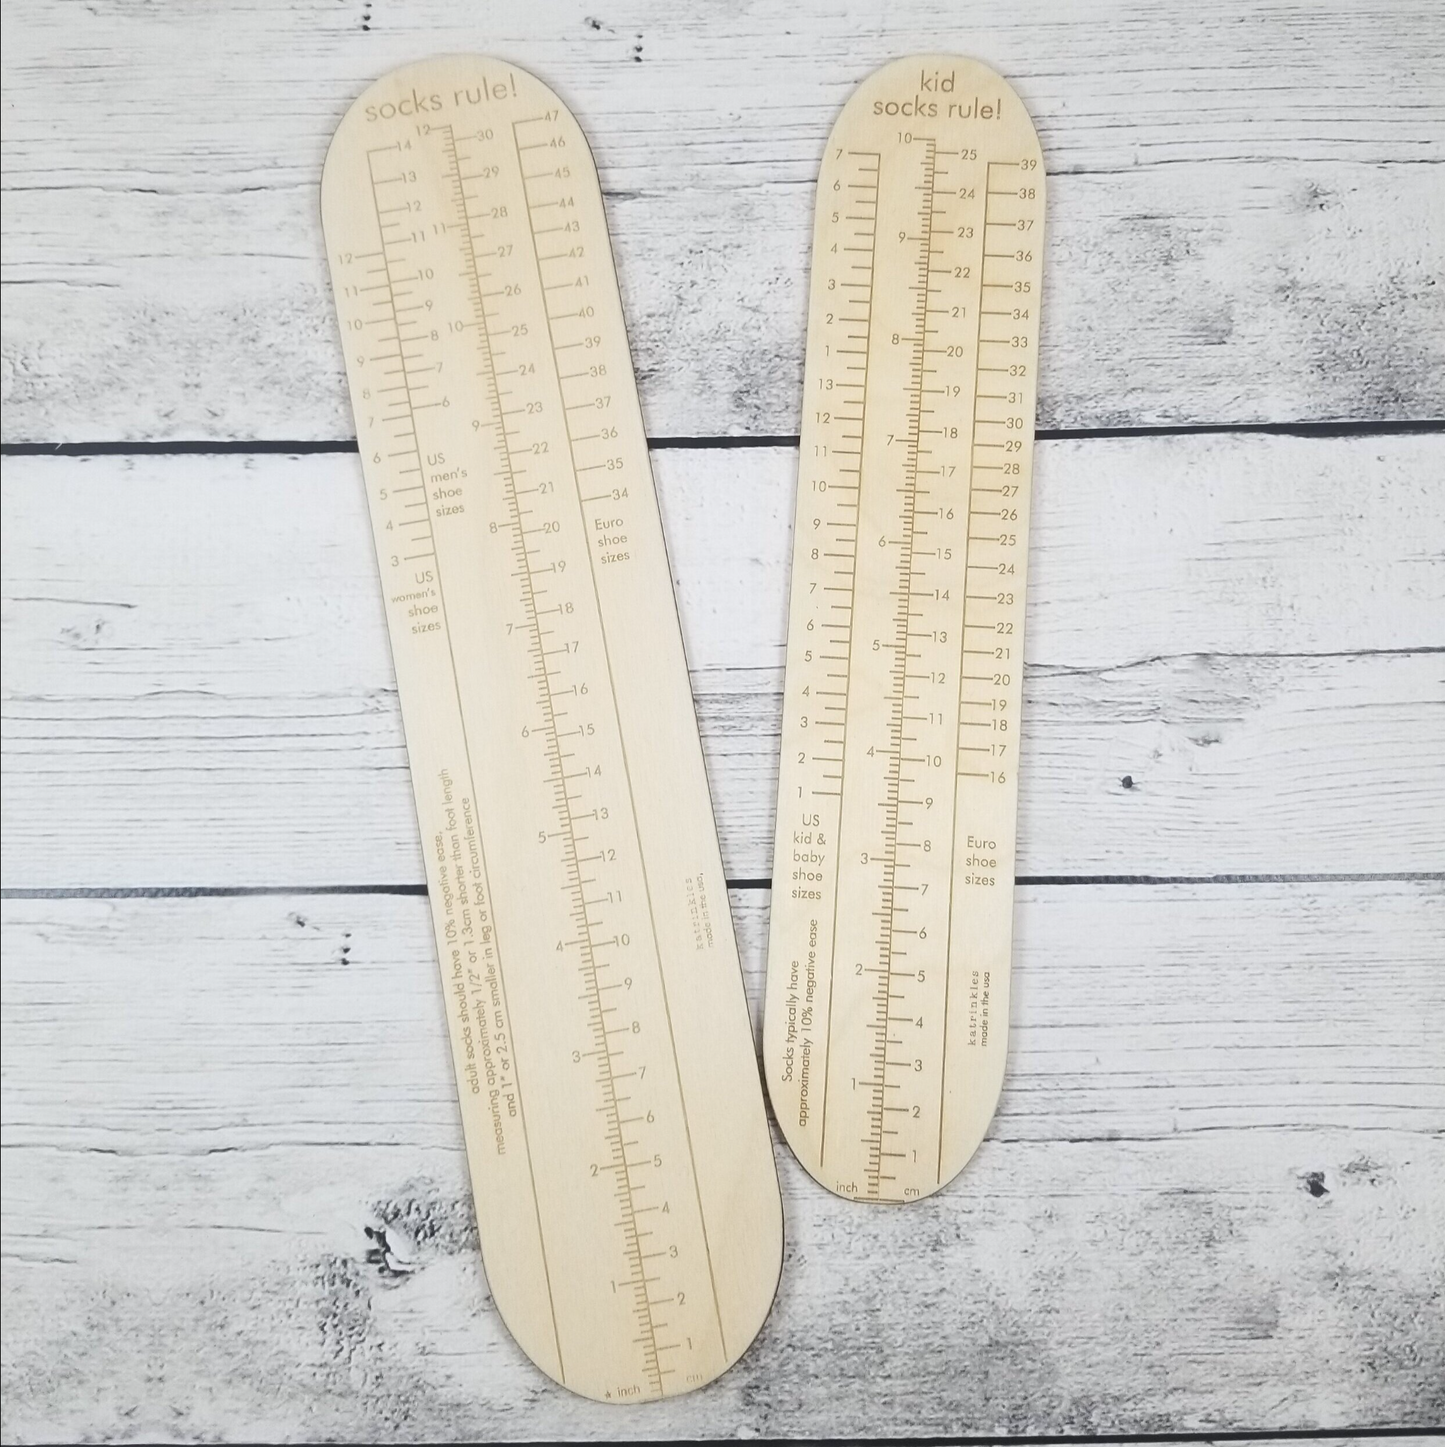 Socks Rule! - Ruler for Measuring Socks - Adult & Kid Sizes Available